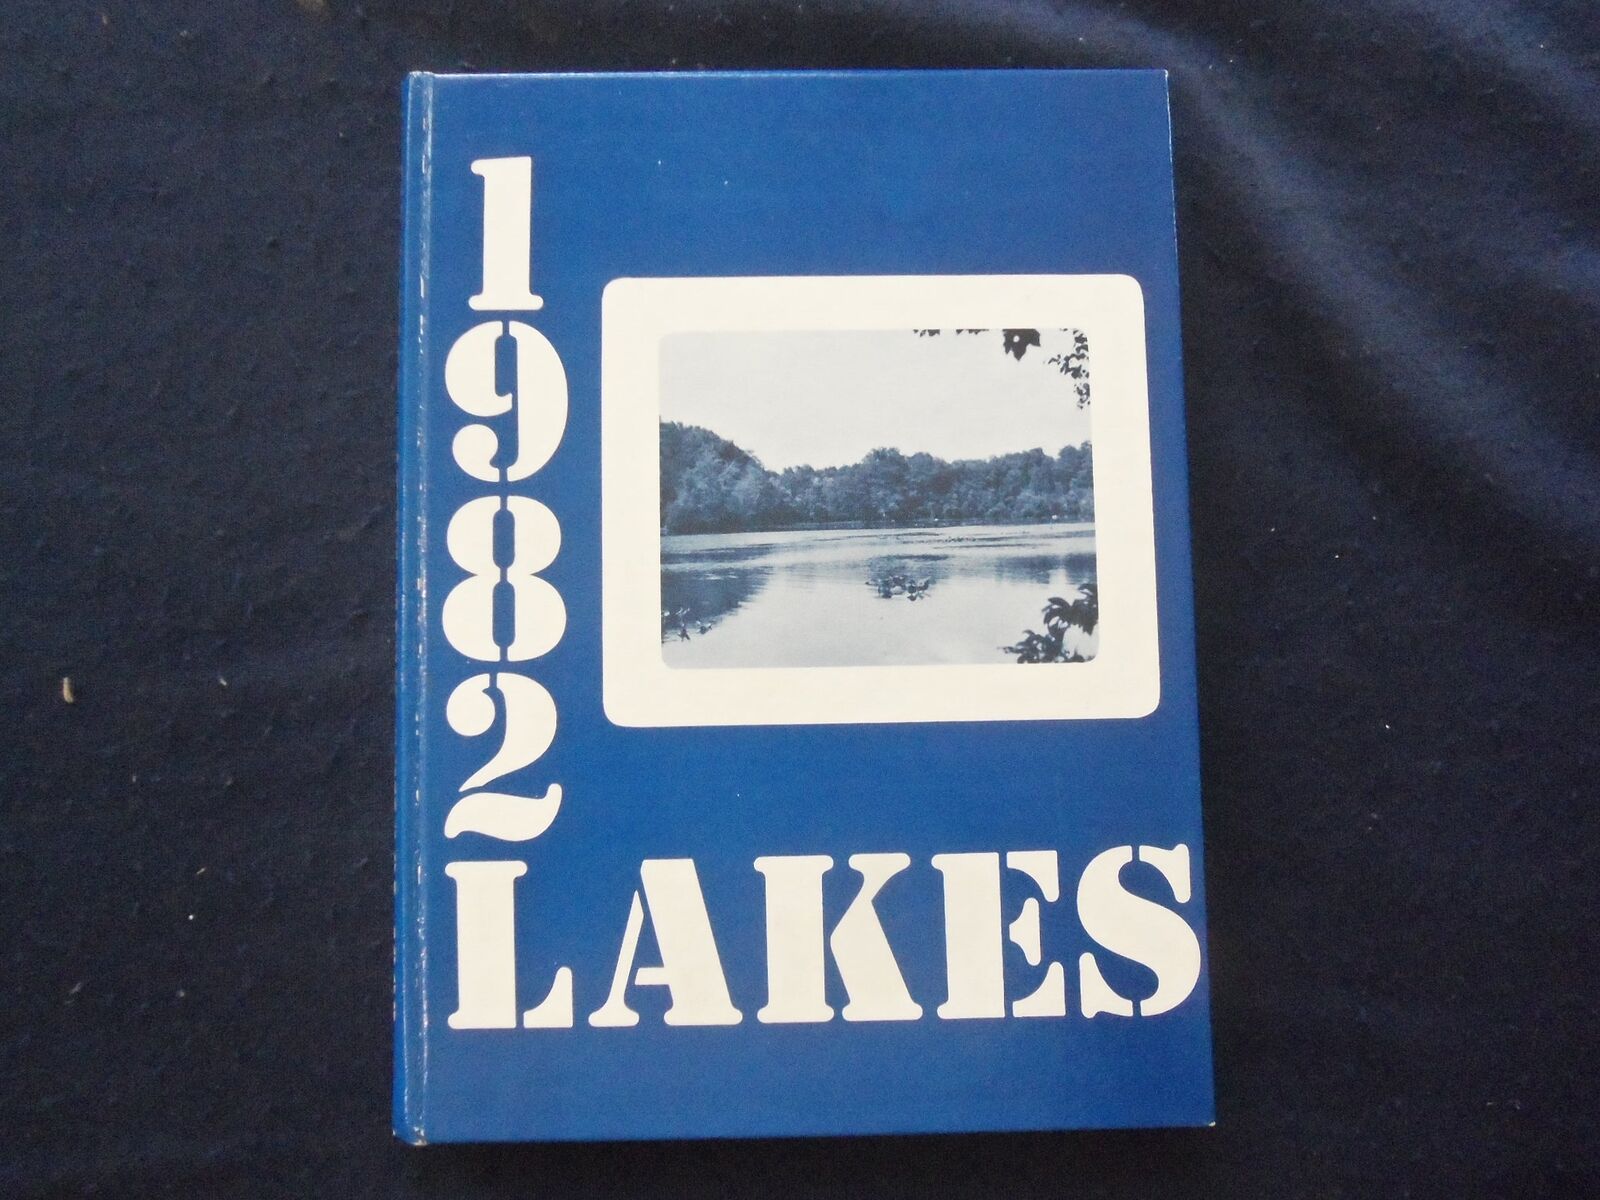 1982 LAKES MOUNTAIN LAKES HIGH SCHOOL YEARBOOK - MOUNTAIN LAKES, NJ - YB 1926V